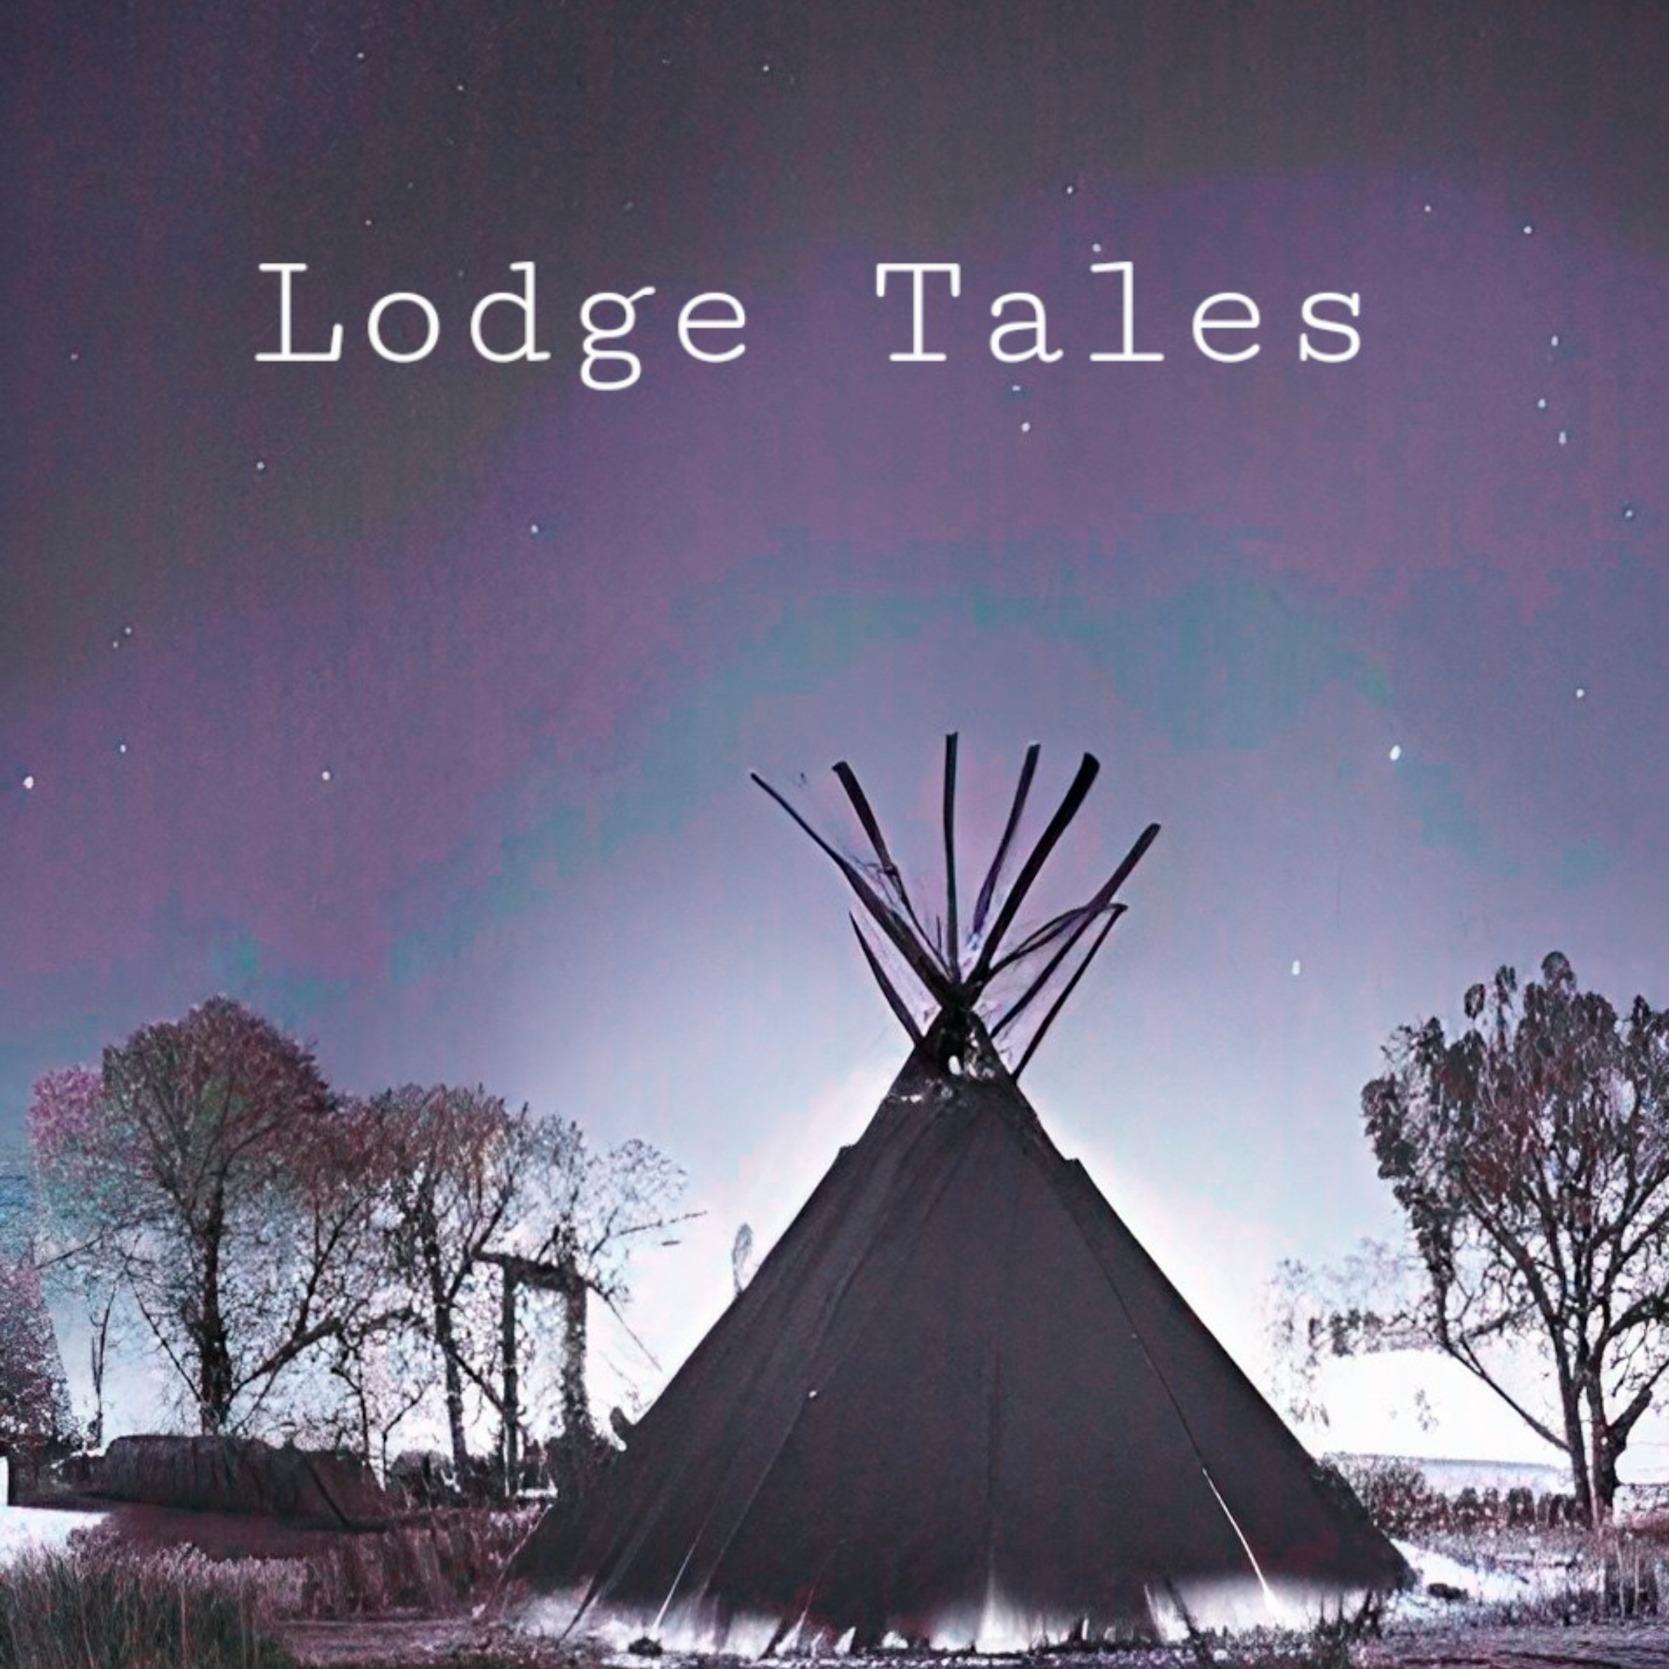 Lodge Tales